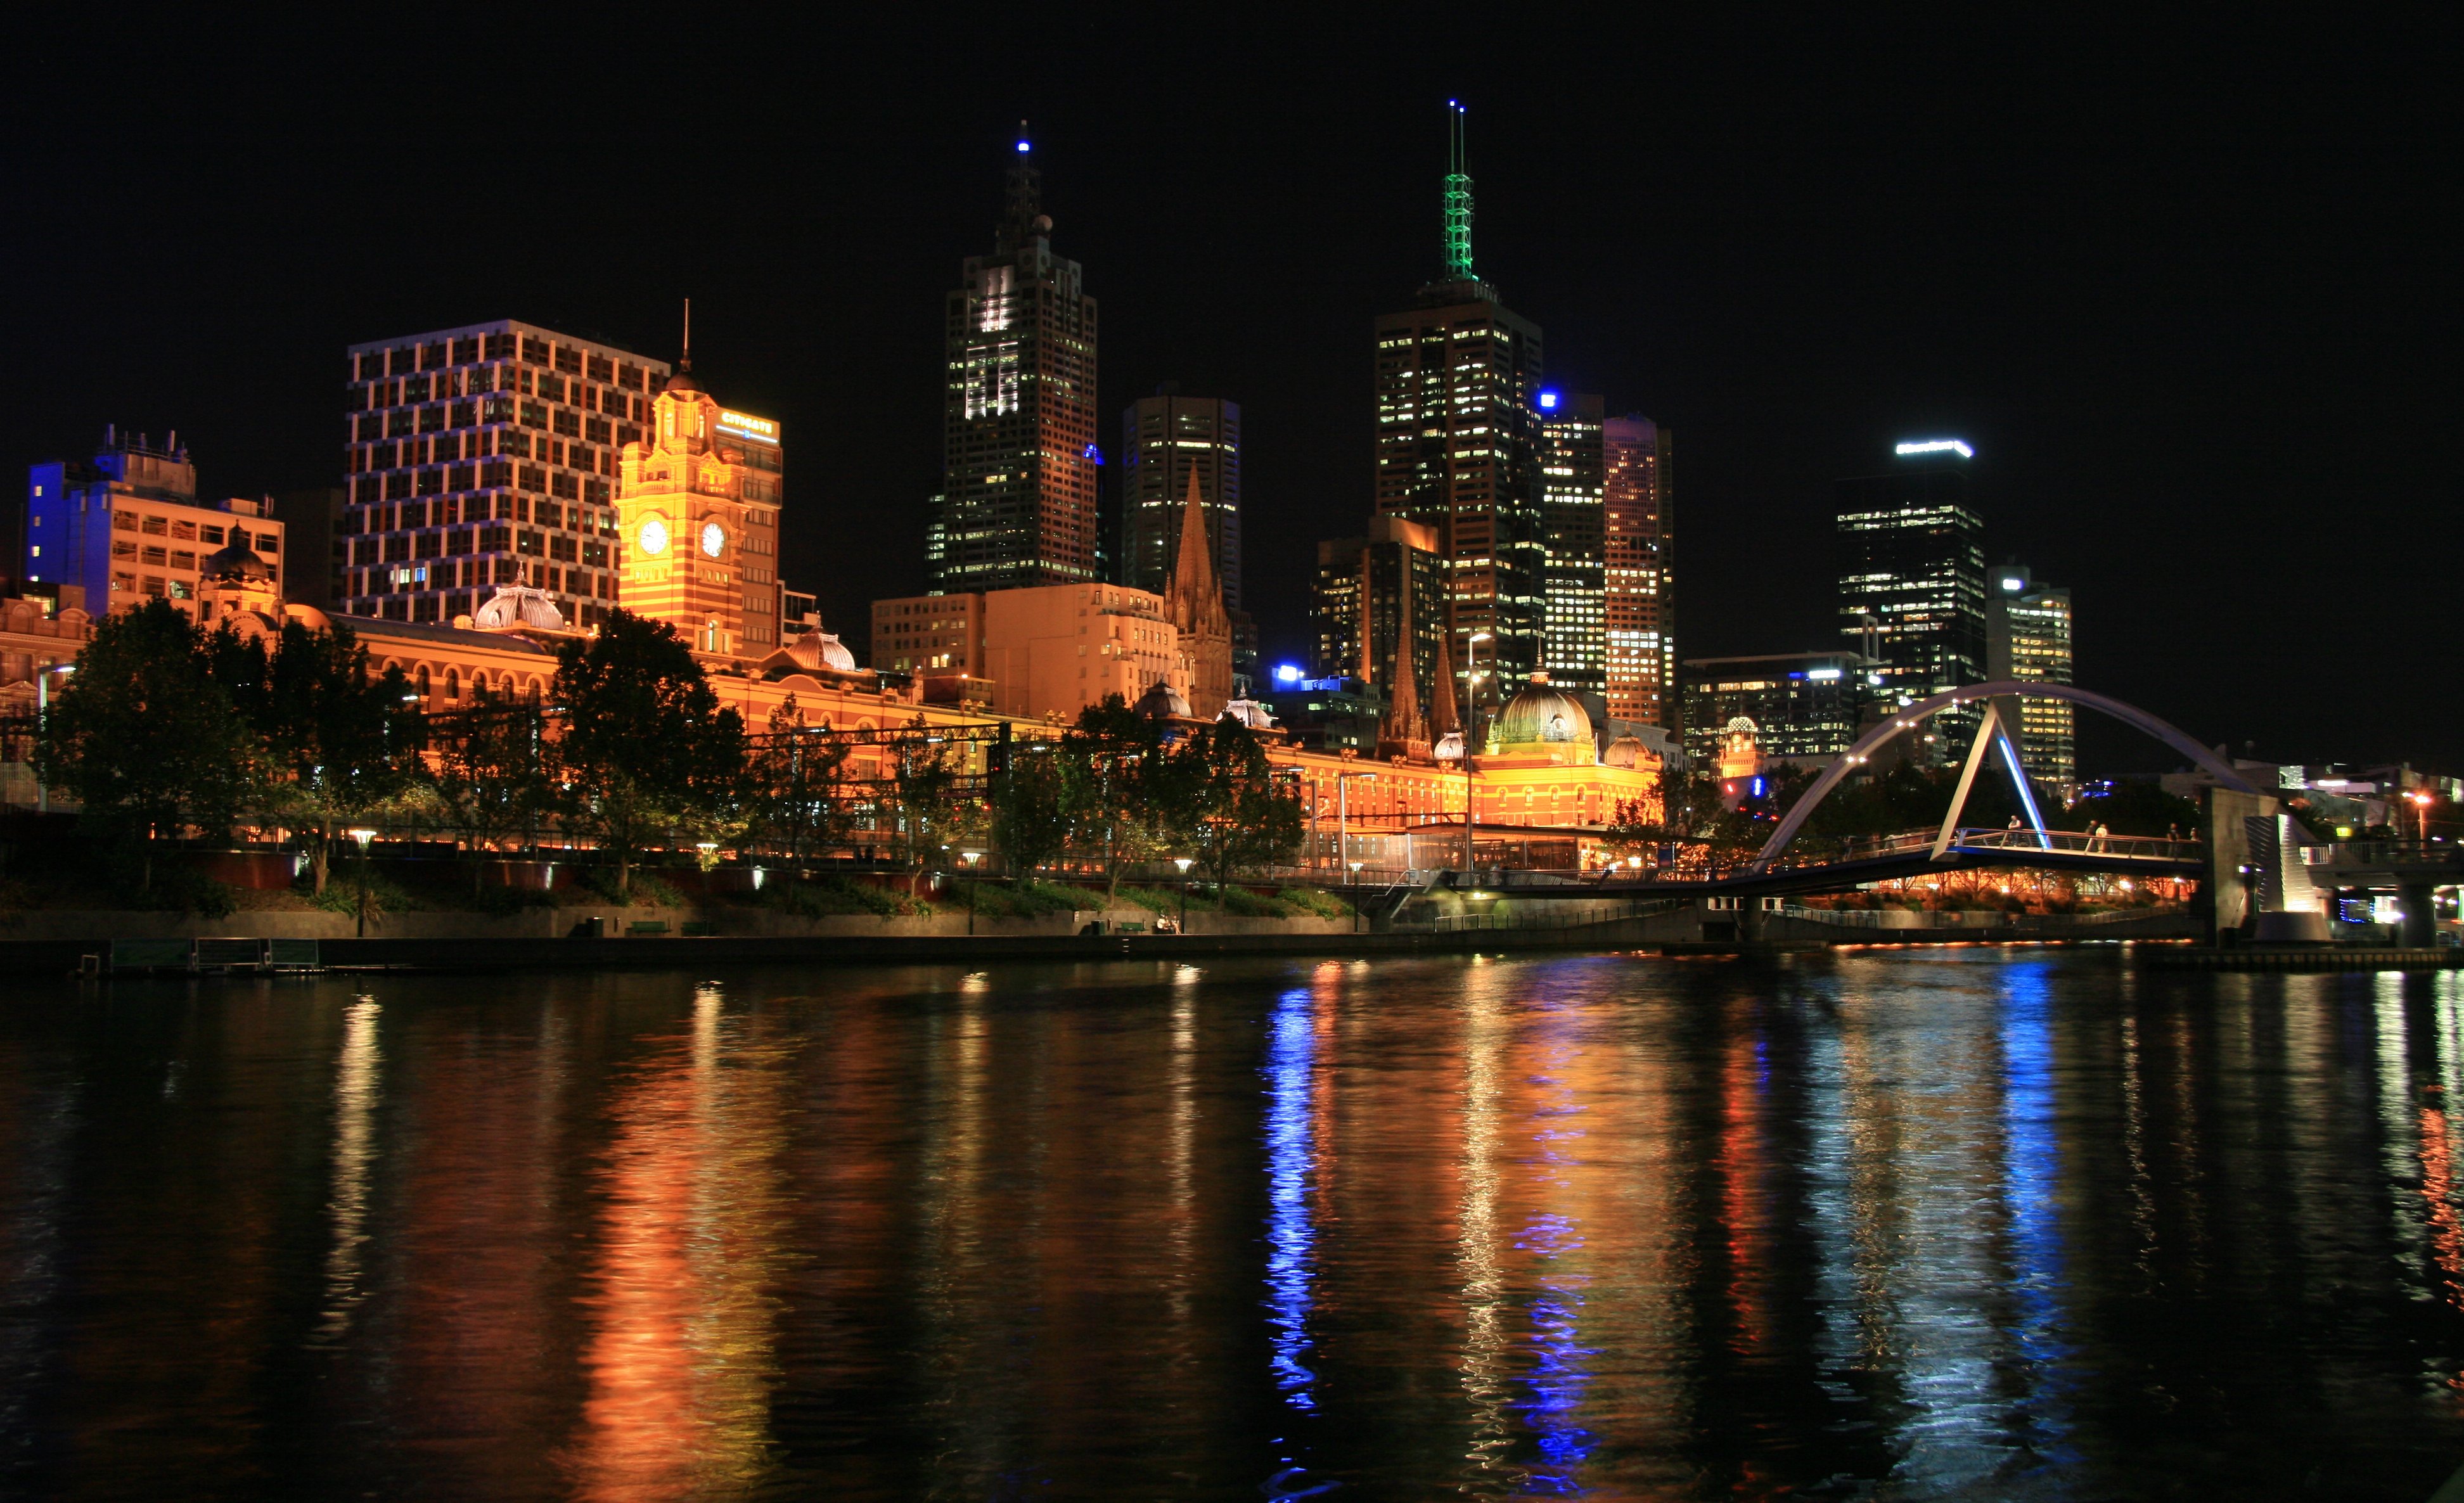 Melbourne after dark